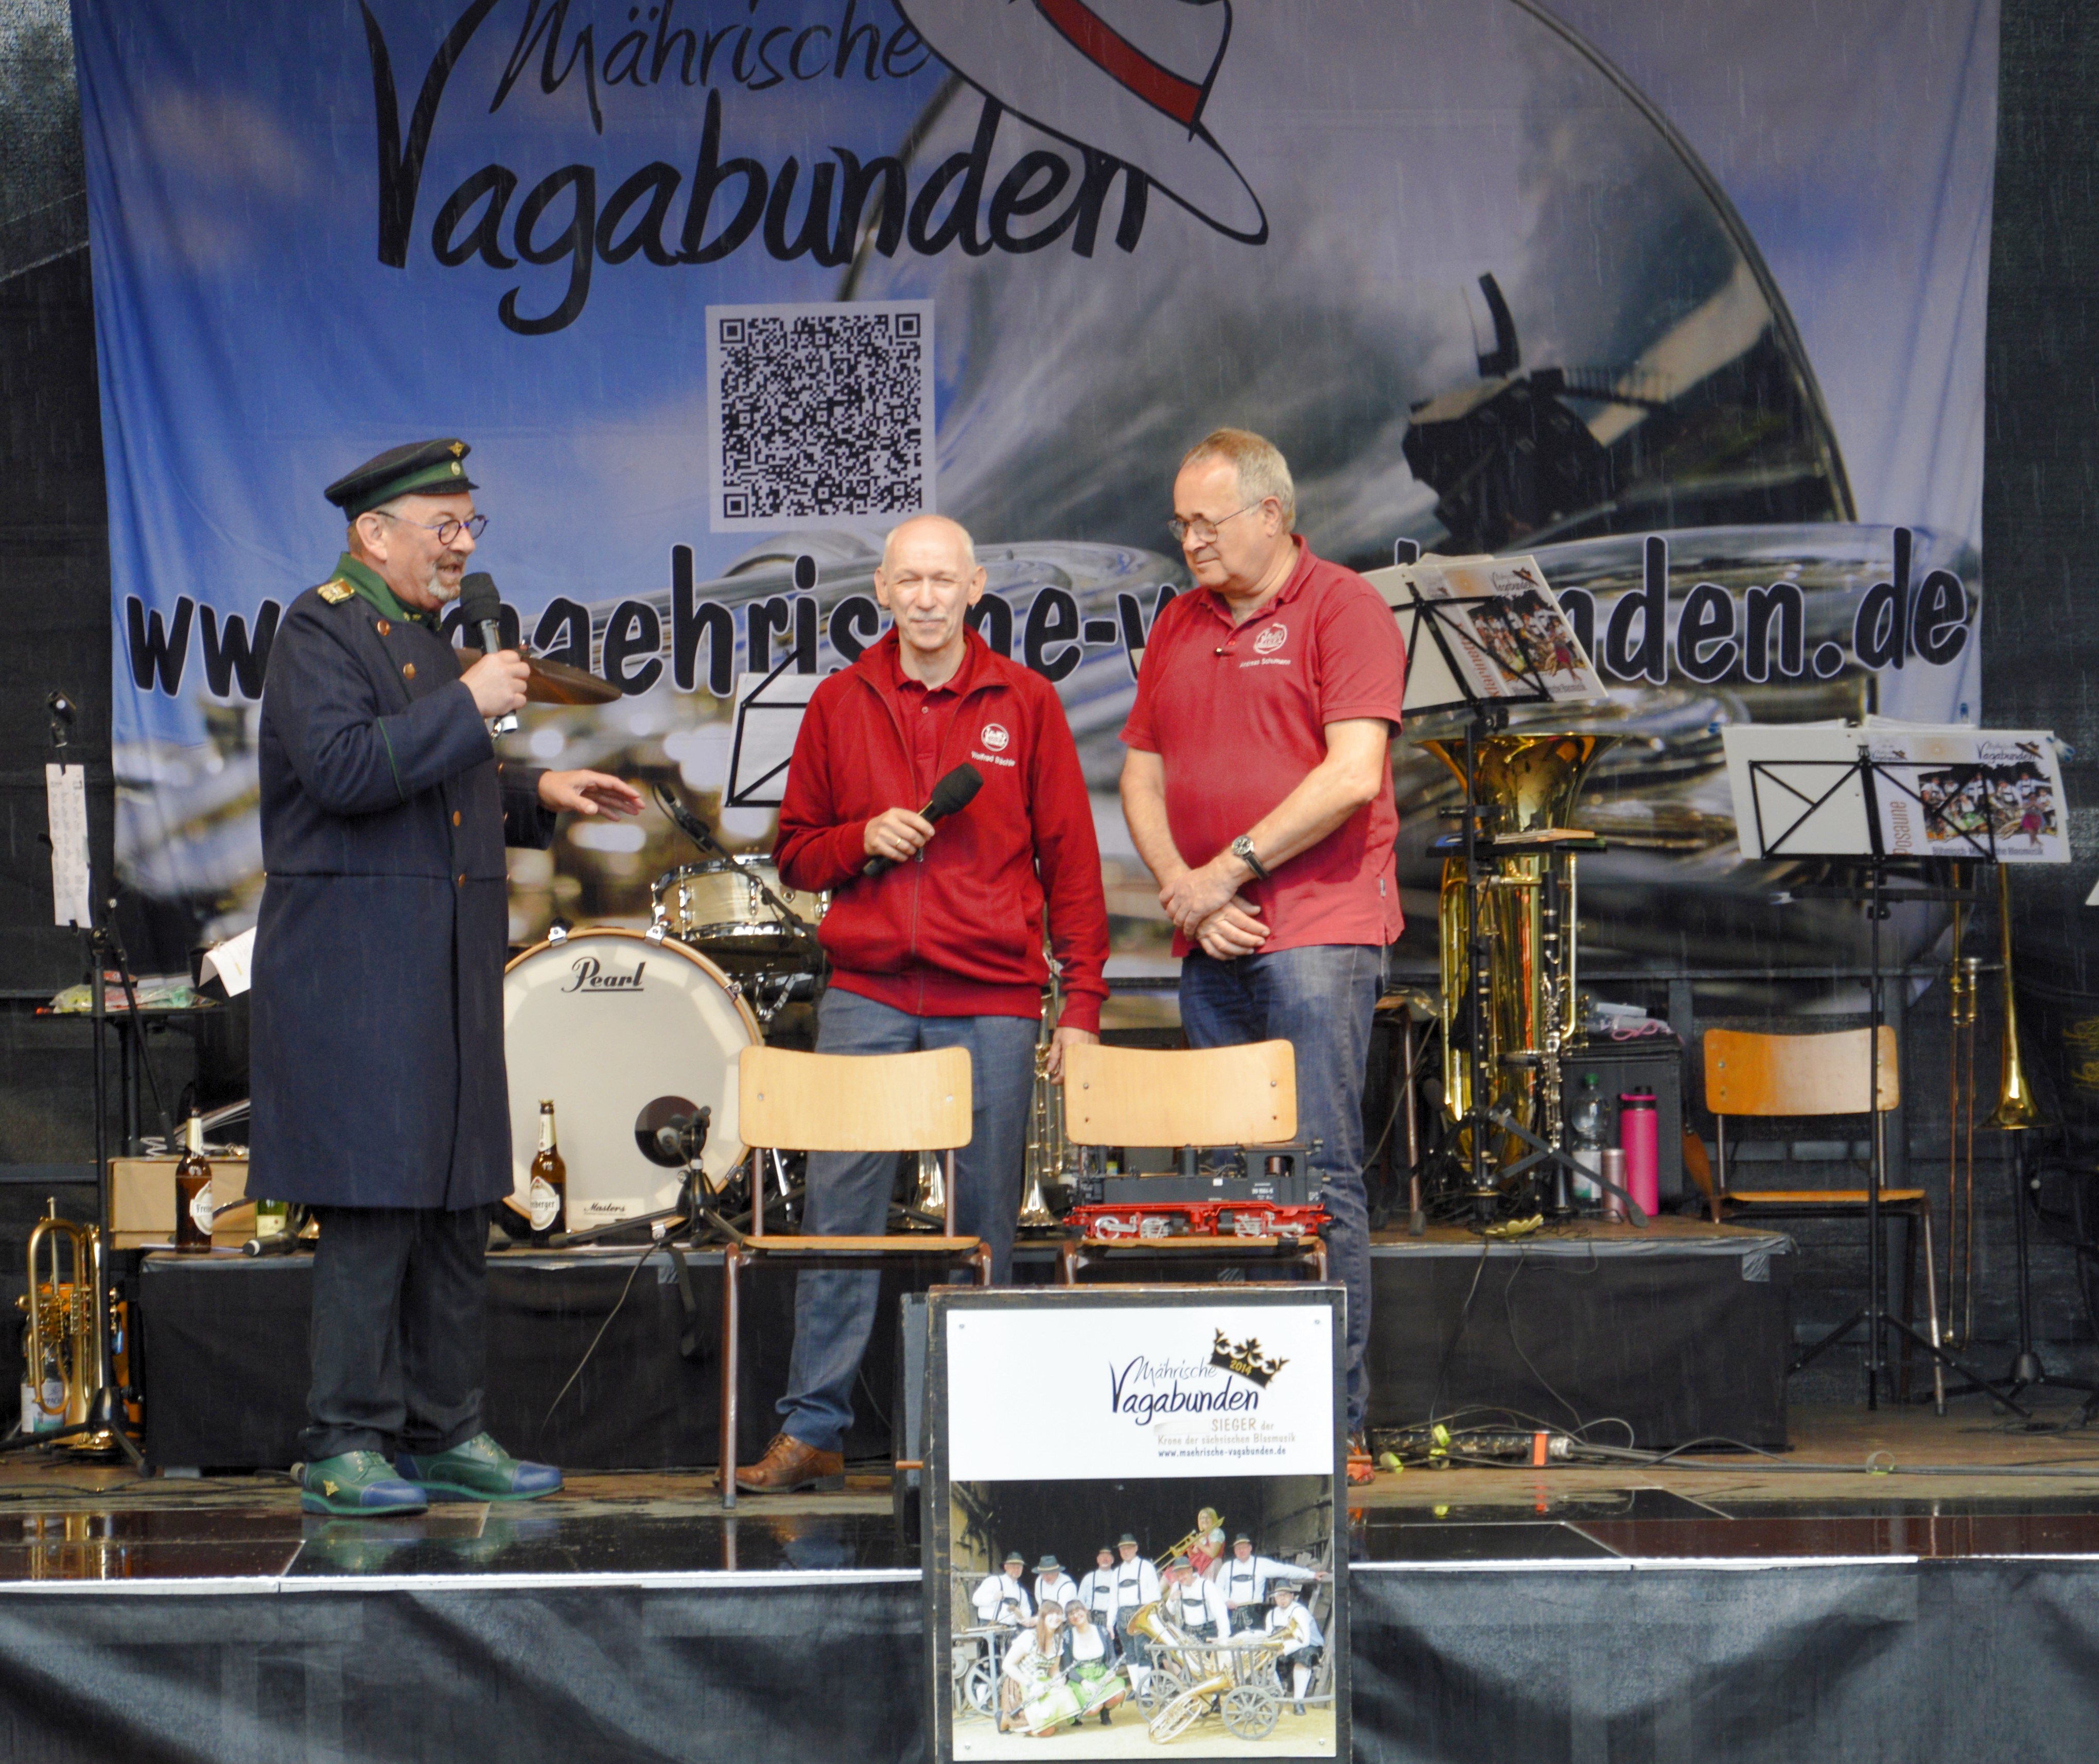 Kaffeklatsch mit Alfred Simm (SOEG), Wolfrad Bächle (LGB), Andreas Schumann (LGB) auf der Veranstaltung der Historic Mobil 